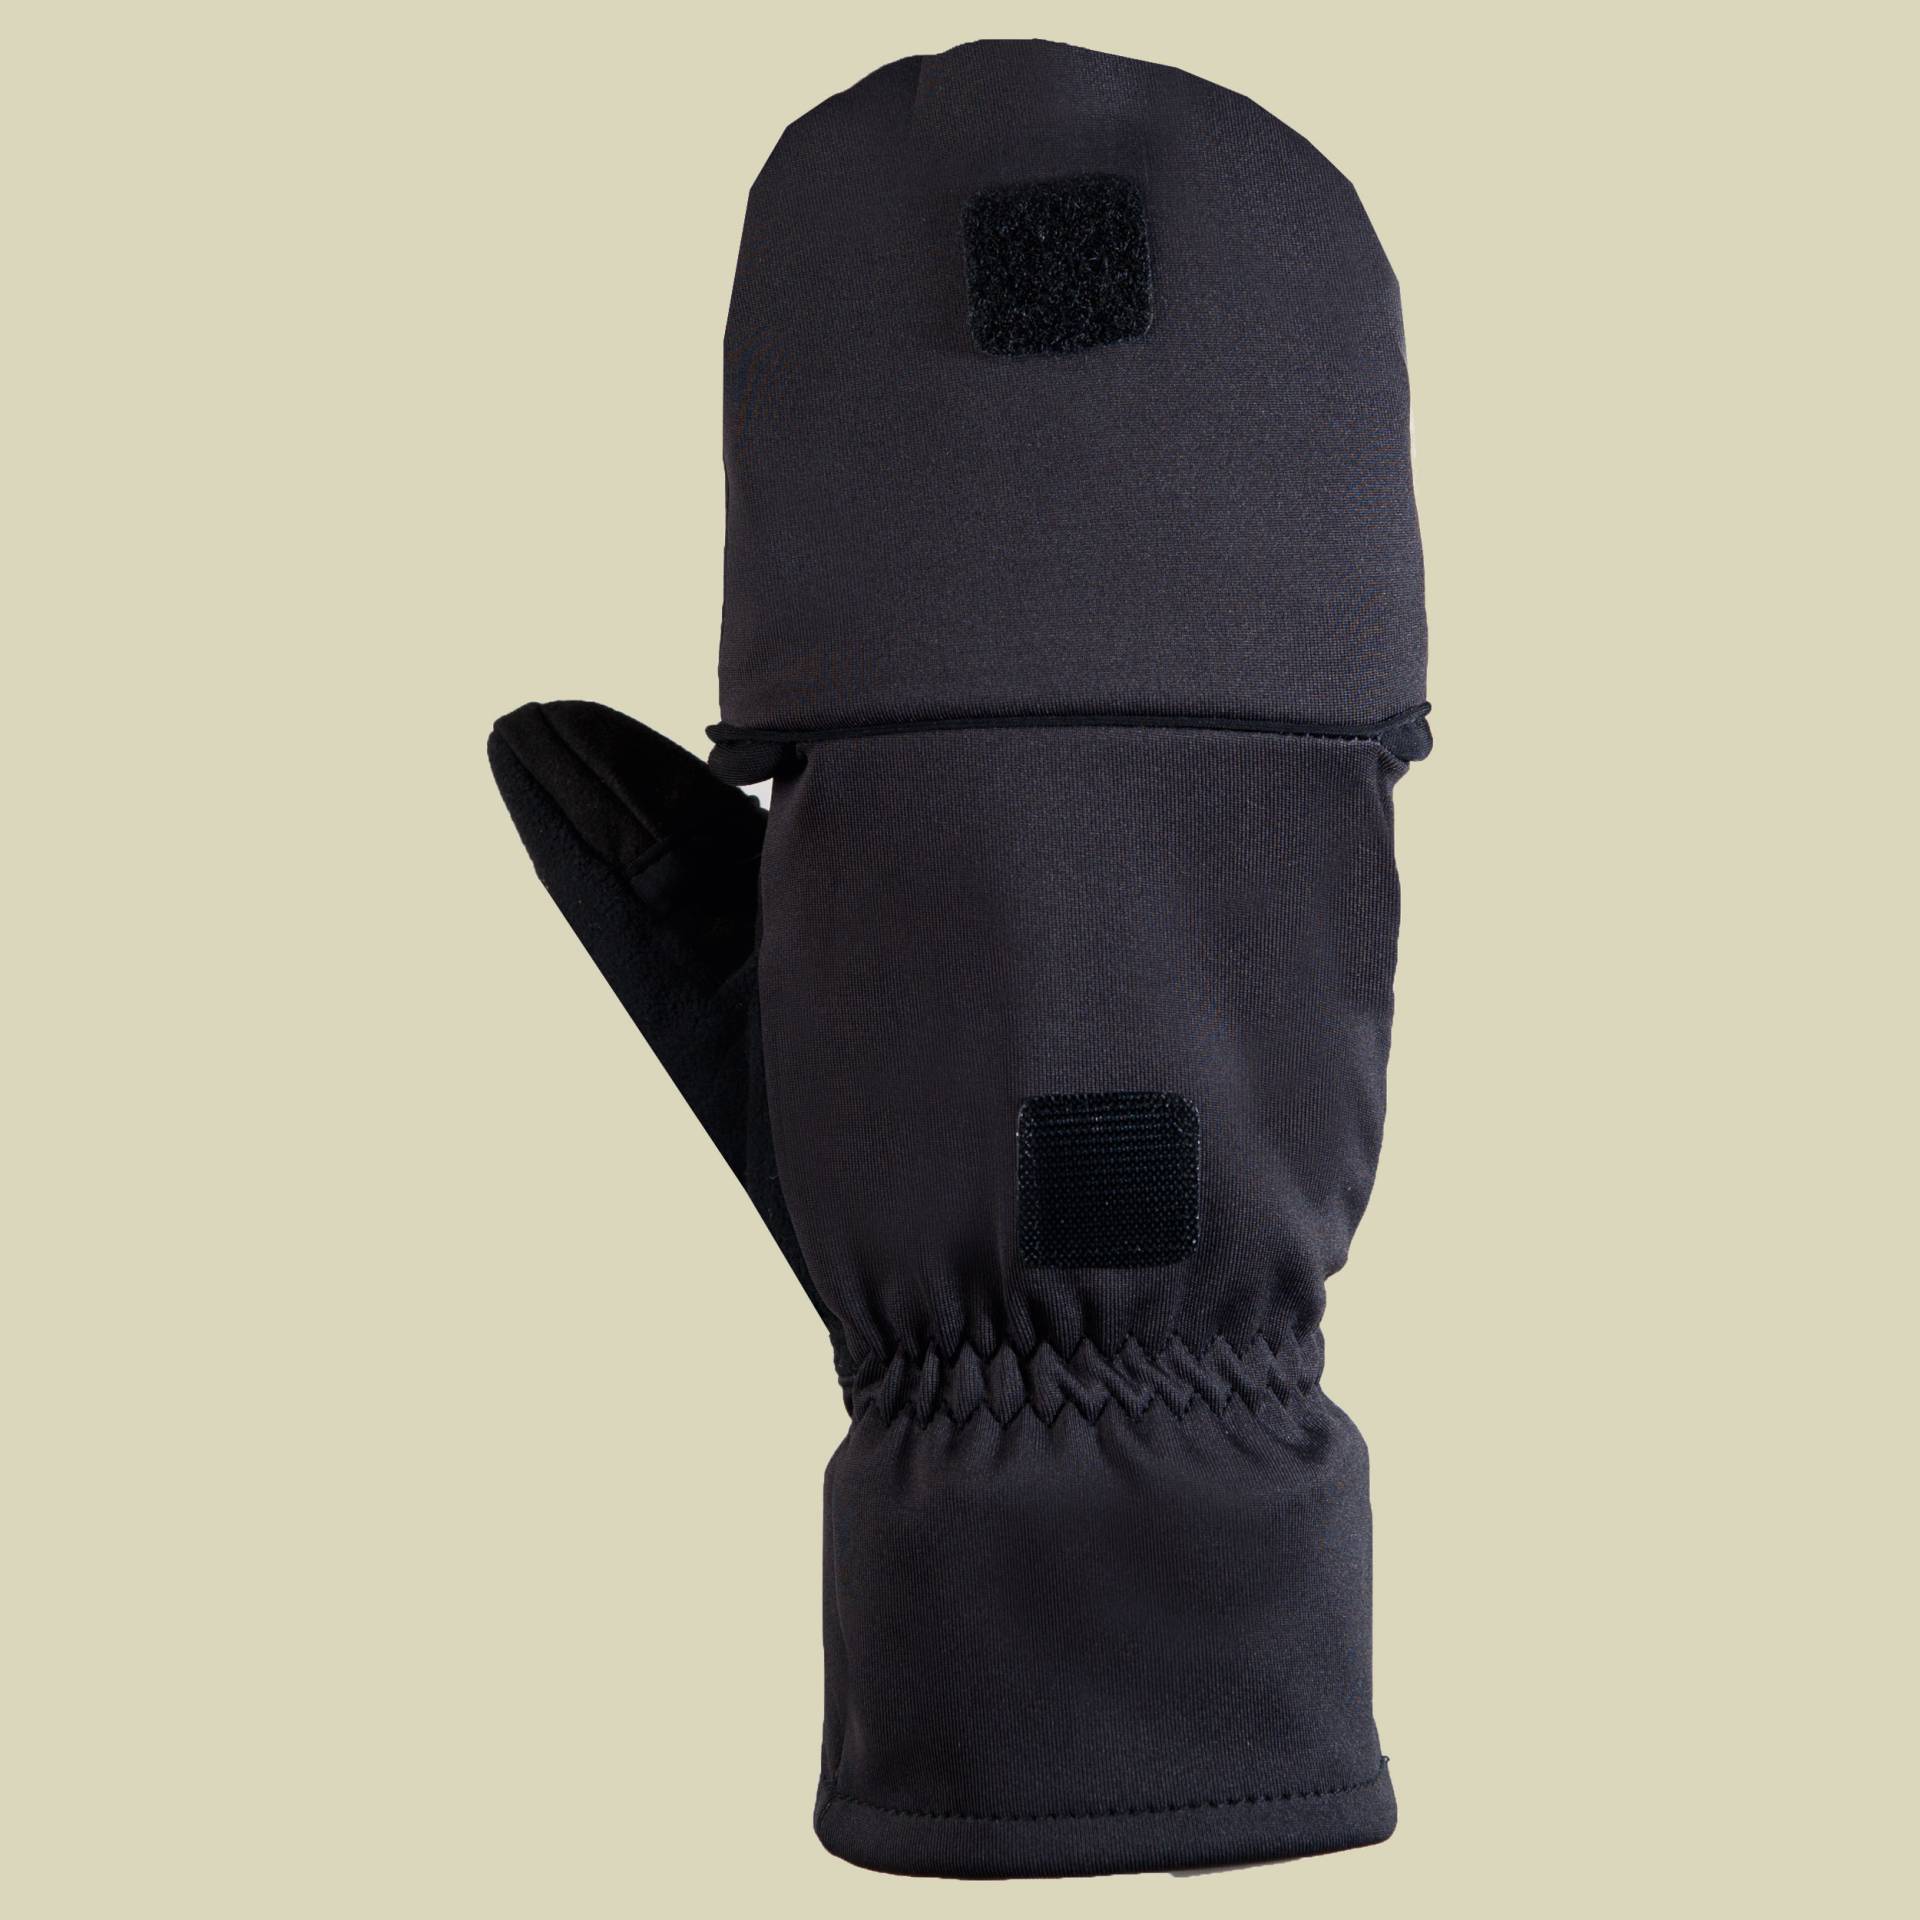 Roeckl Sports Kadane Multi Windstopper Fausthandschuhe/Fingerhandschuhe  Größe 10,5 schwarz von Roeckl Sports